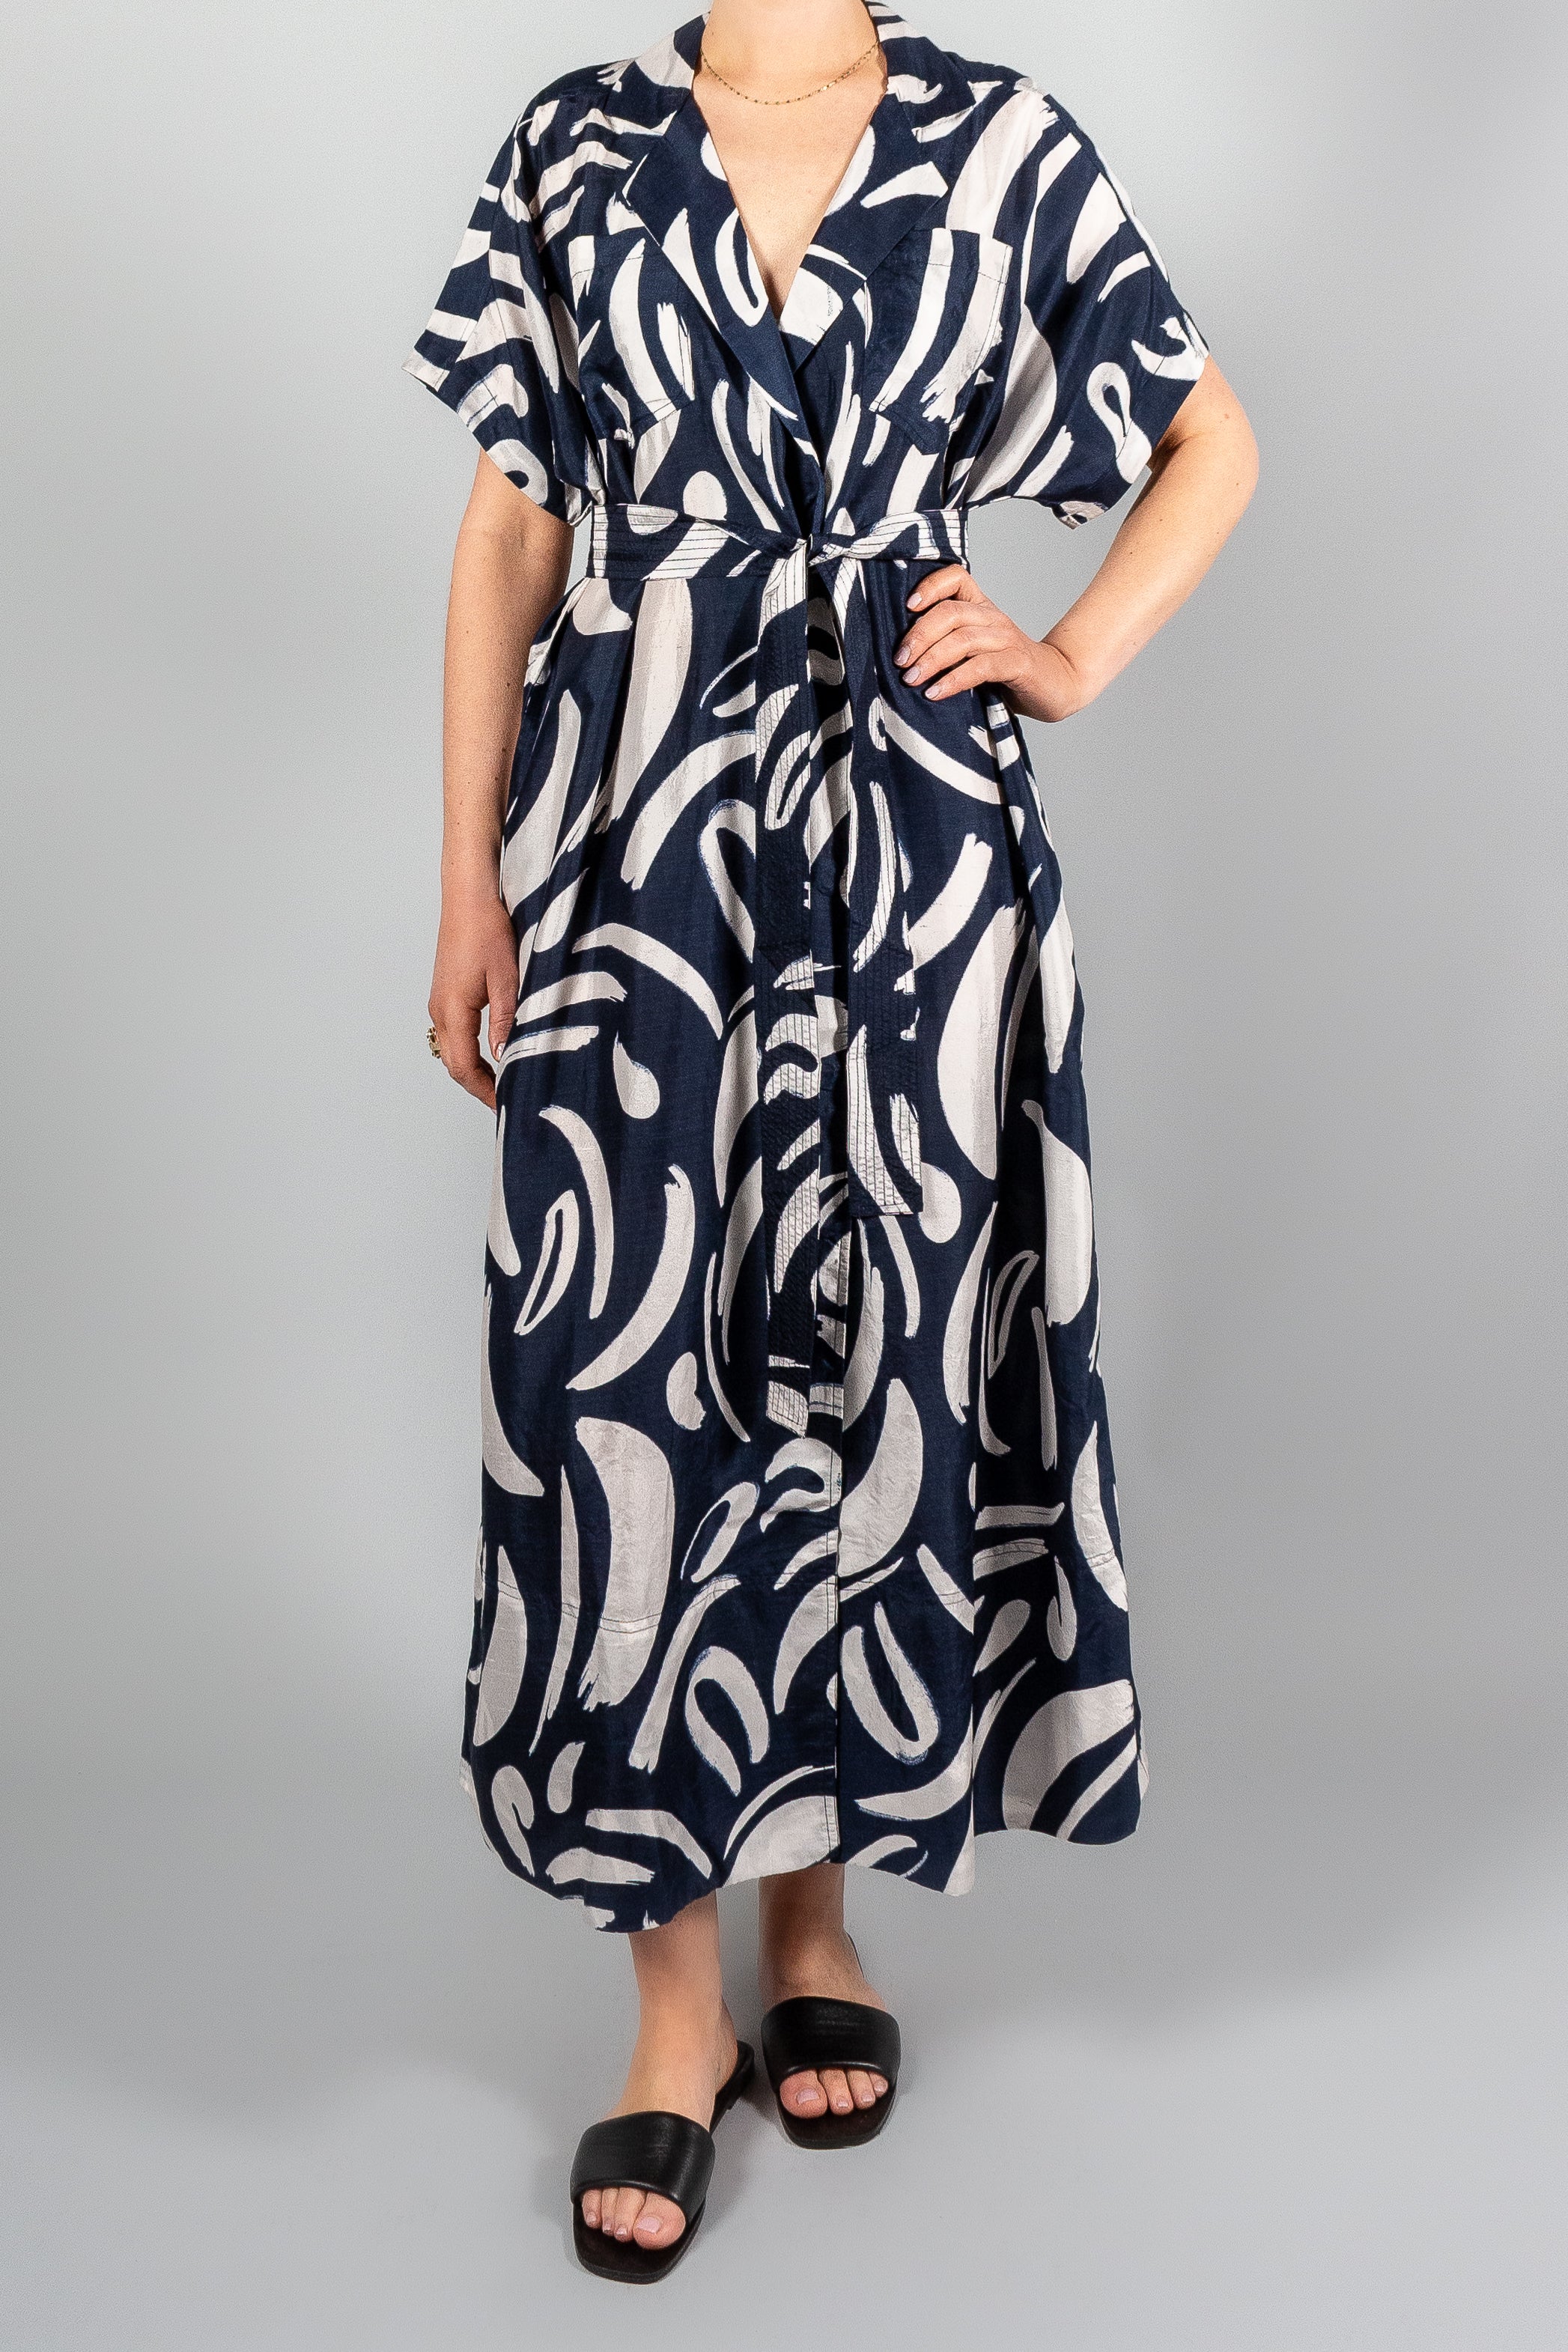 Apiece Apart Vincenza Wrap Maxi Dress-Dresses and Jumpsuits-Misch-Boutique-Vancouver-Canada-misch.ca